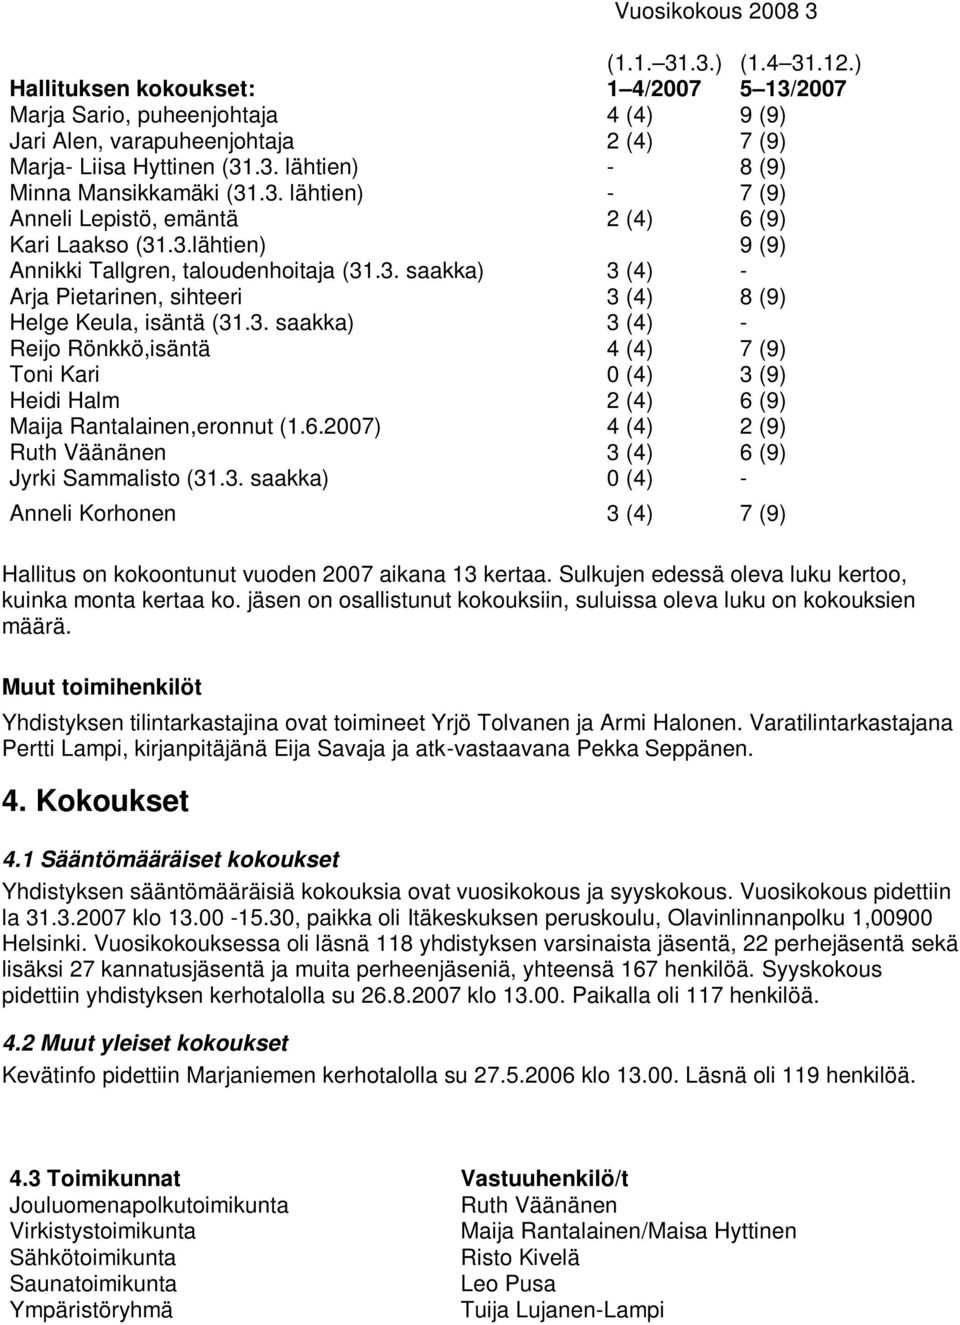 3. saakka) 3 (4) - Reijo Rönkkö,isäntä 4 (4) 7 (9) Toni Kari 0 (4) 3 (9) Heidi Halm 2 (4) 6 (9) Maija Rantalainen,eronnut (1.6.2007) 4 (4) 2 (9) Ruth Väänänen 3 (4) 6 (9) Jyrki Sammalisto (31.3. saakka) 0 (4) - Anneli Korhonen 3 (4) 7 (9) Hallitus on kokoontunut vuoden 2007 aikana 13 kertaa.